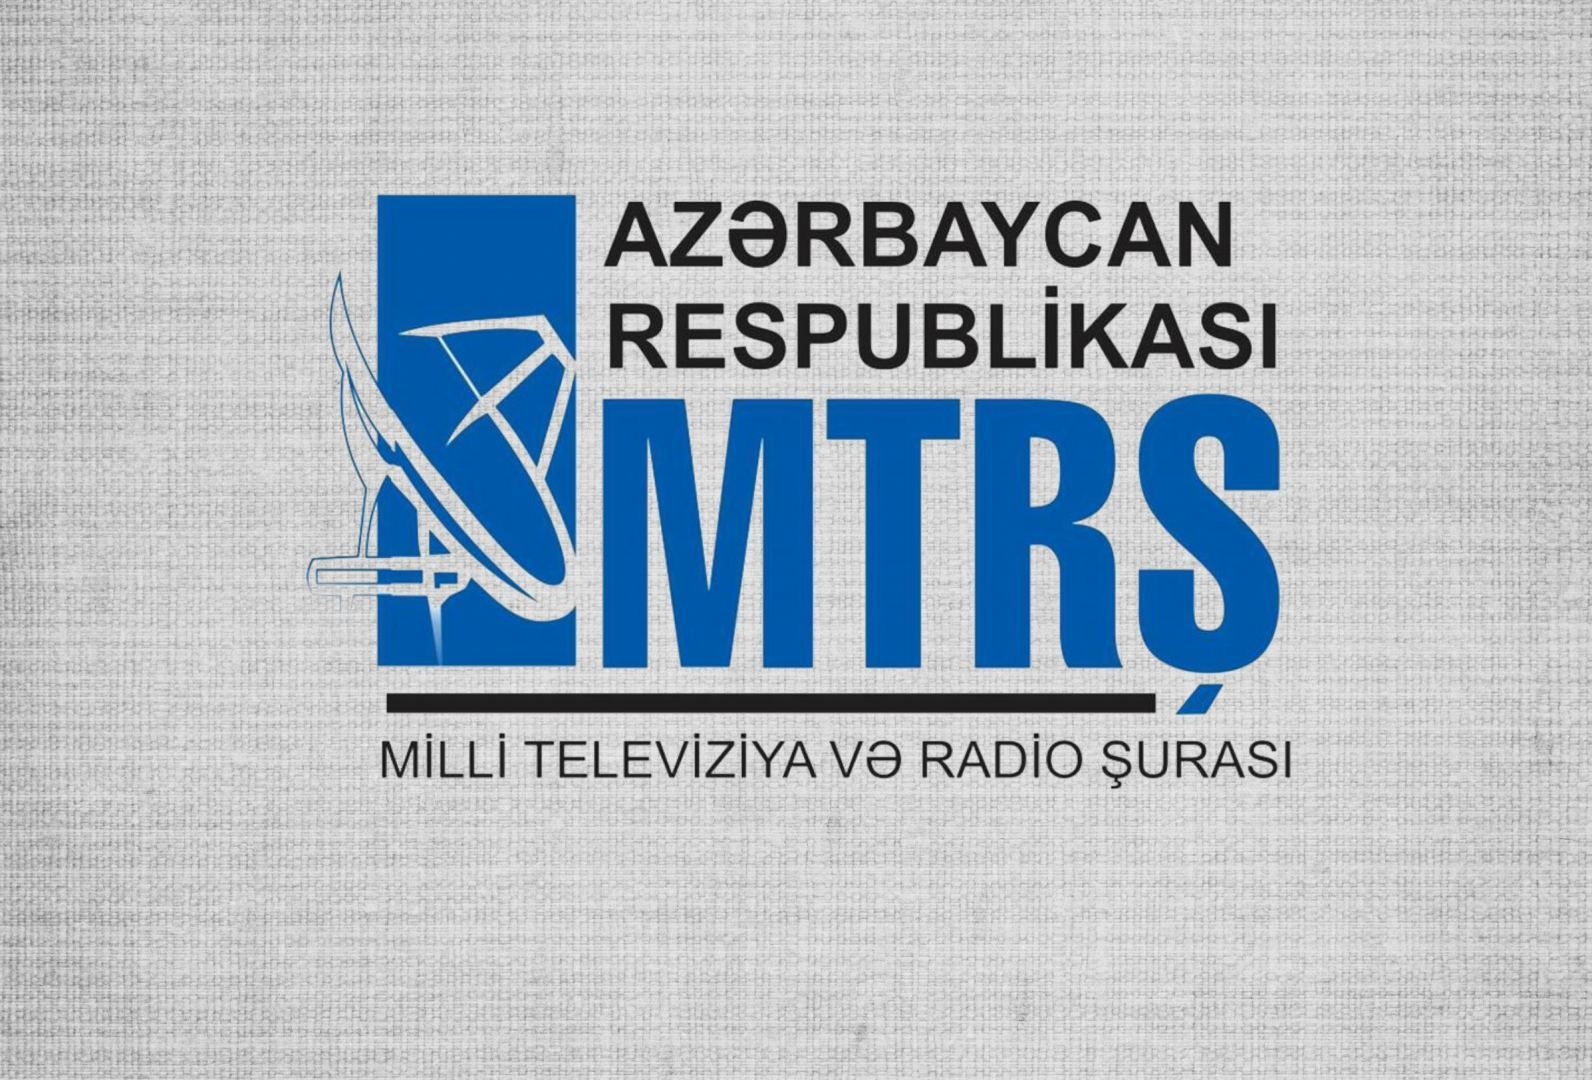 Объявлен конкурс на открытие нового телеканала в Азербайджане